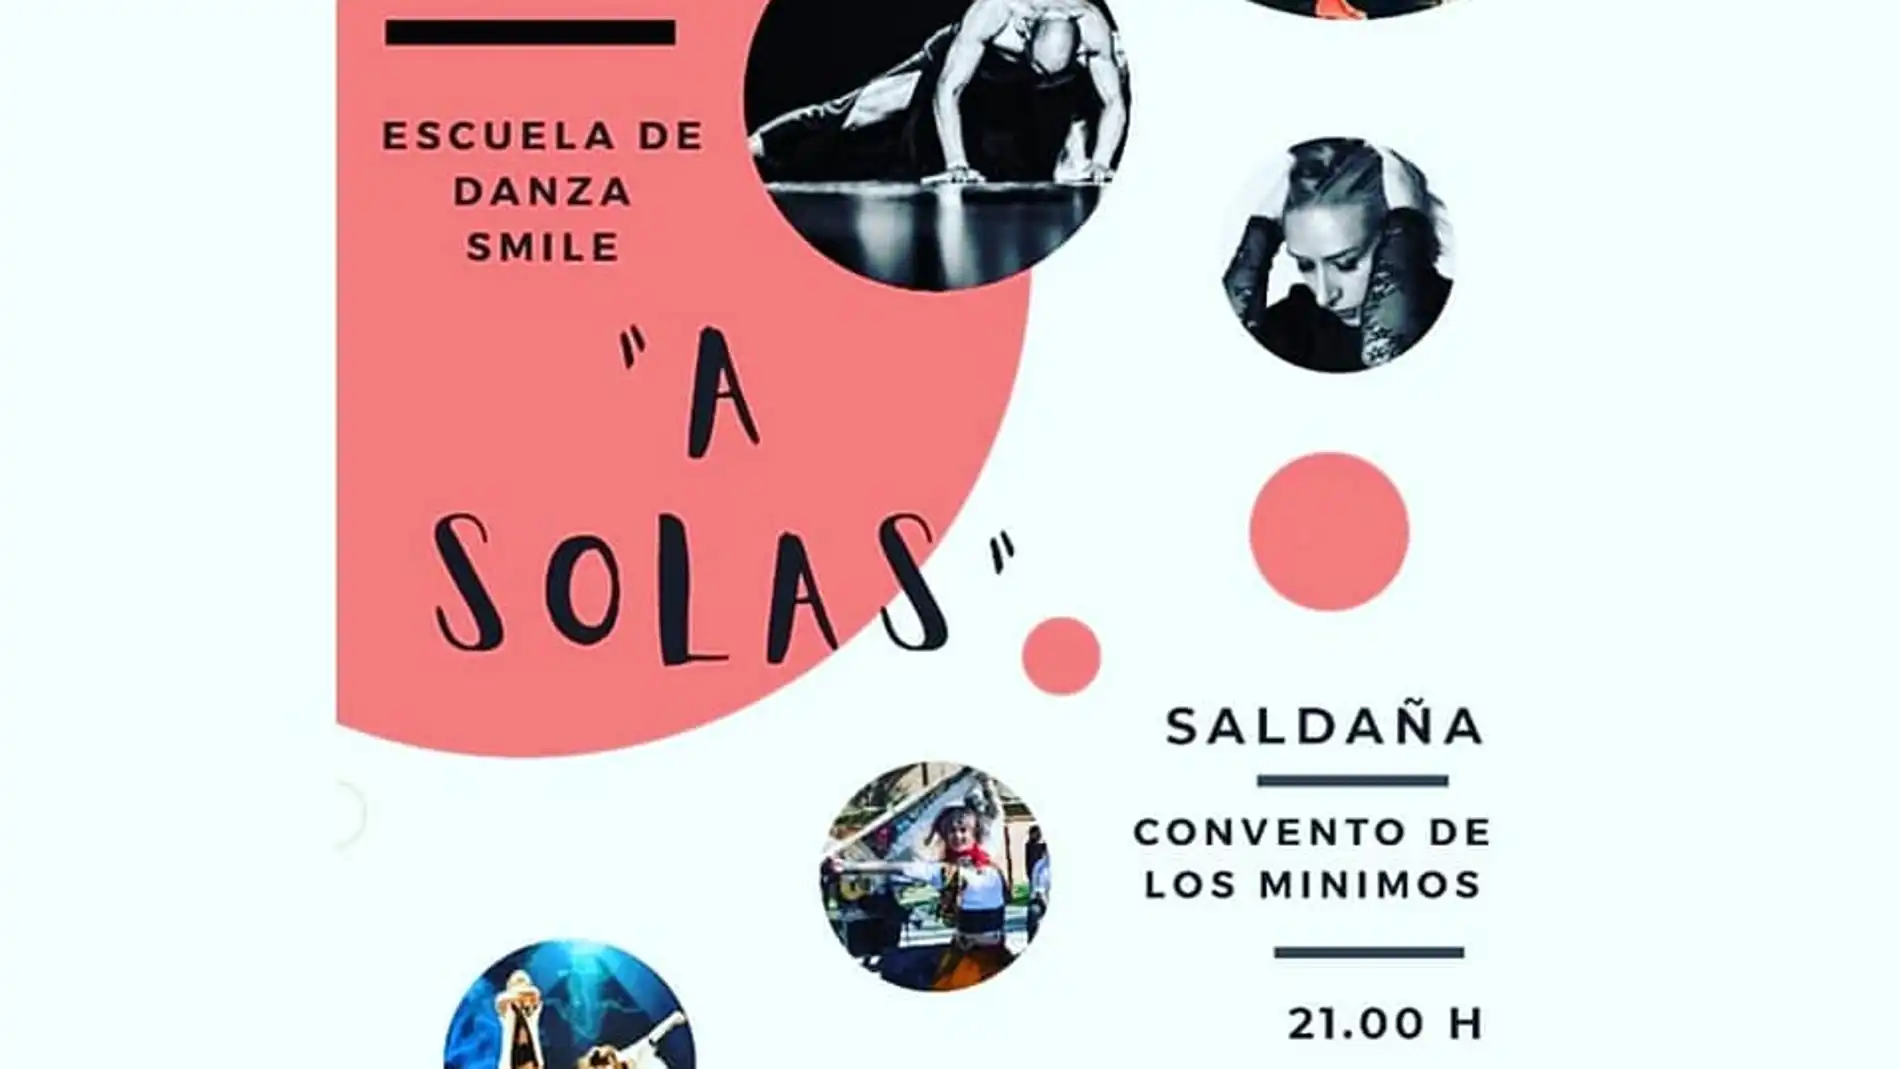 La Escuela de Danza Smile representa "A SOLAS" en Saldaña